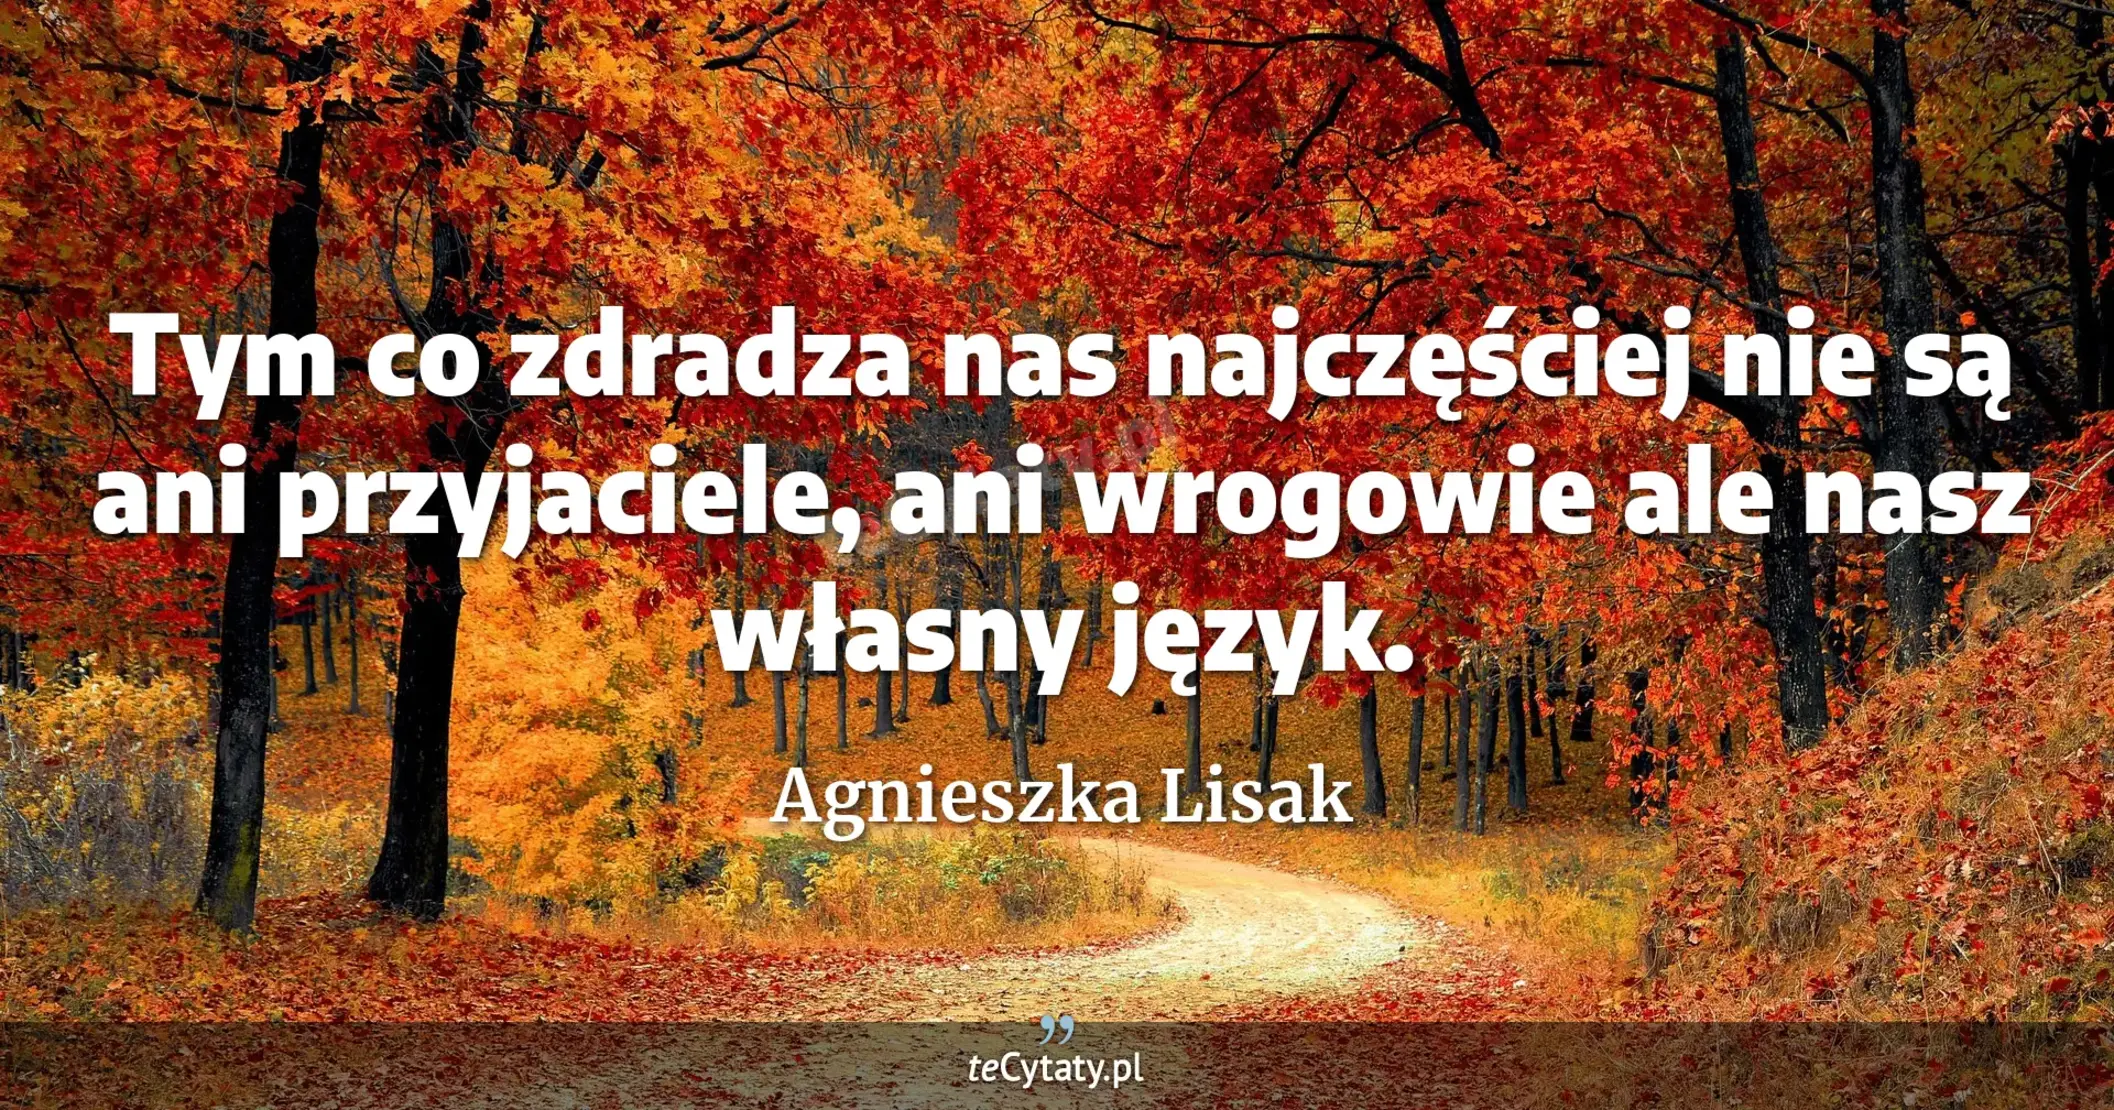 Tym co zdradza nas najczęściej nie są ani przyjaciele, ani wrogowie ale nasz własny język. - Agnieszka Lisak